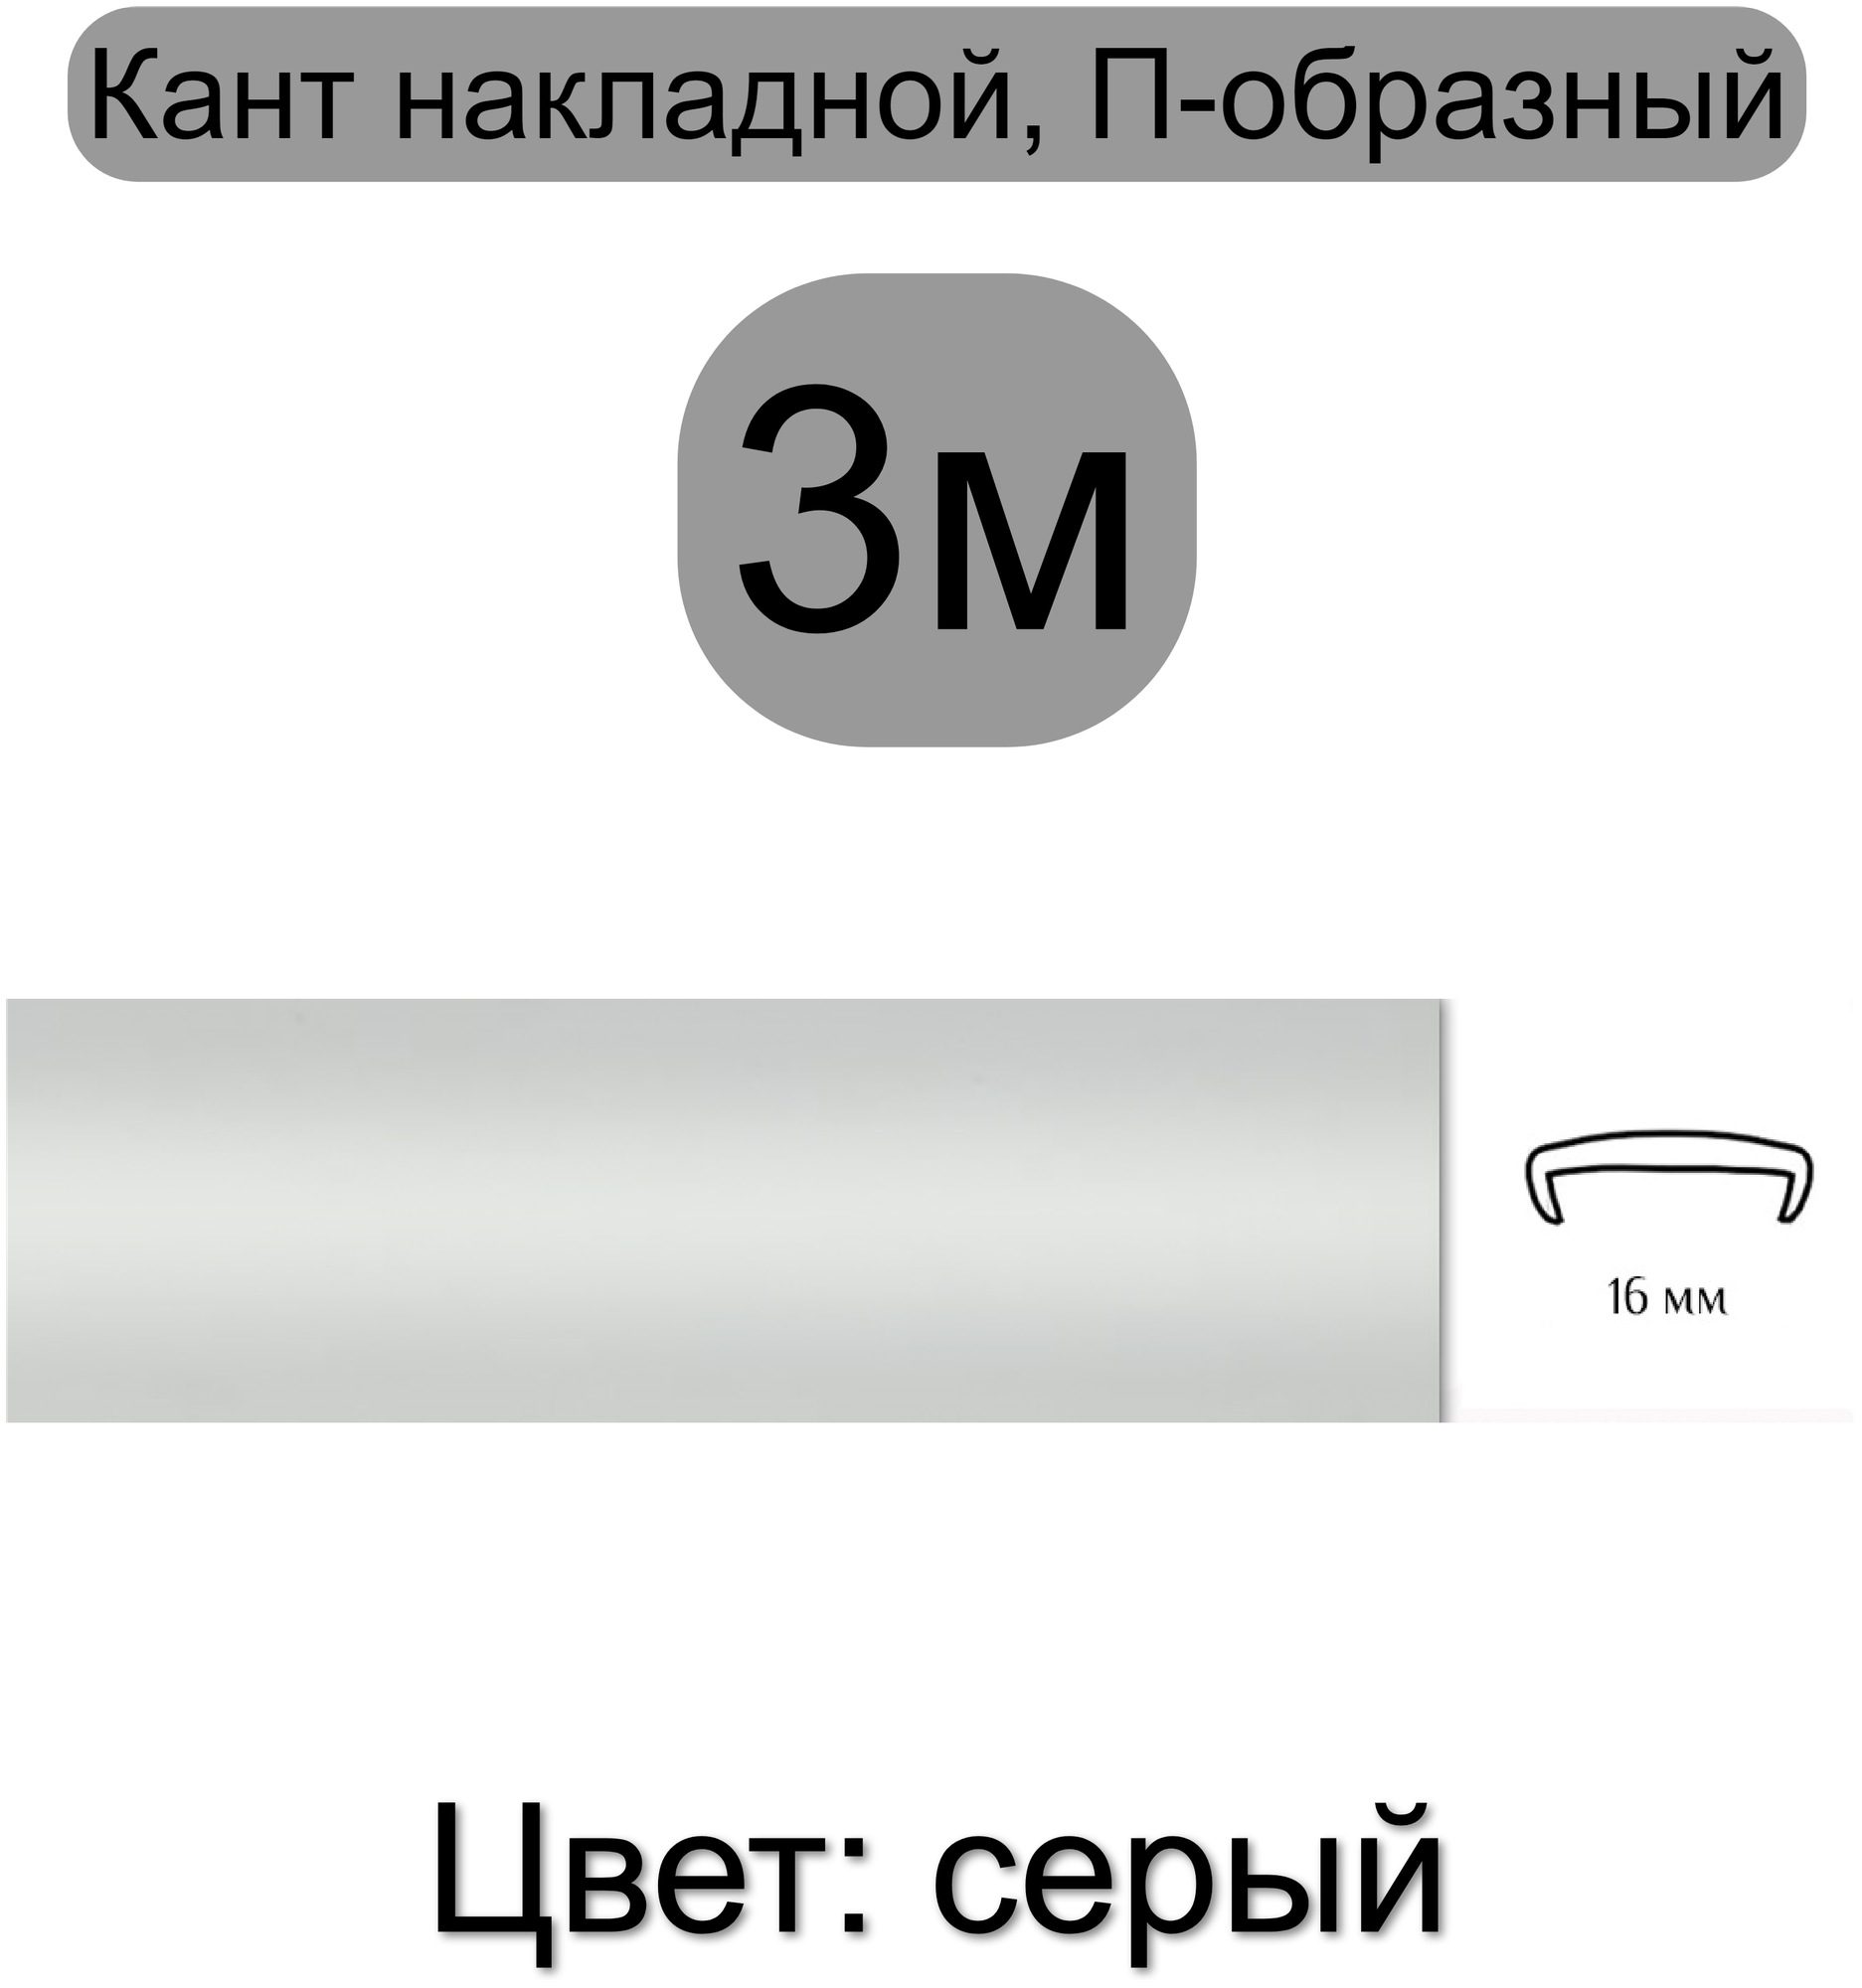 Кромка мебельная, профиль ПВХ кант, накладной, 16мм, цвет: серый, 3м - фотография № 1